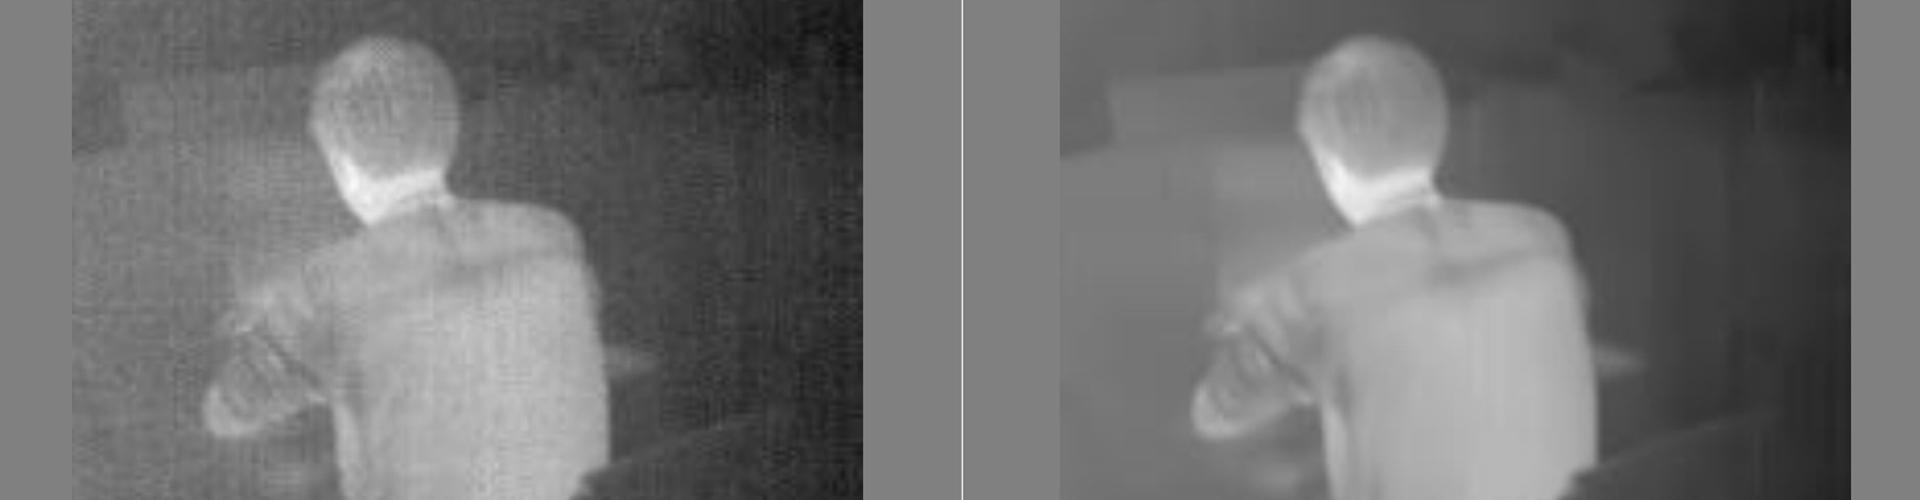 Base de données infrarouge de réduction du bruit d'image